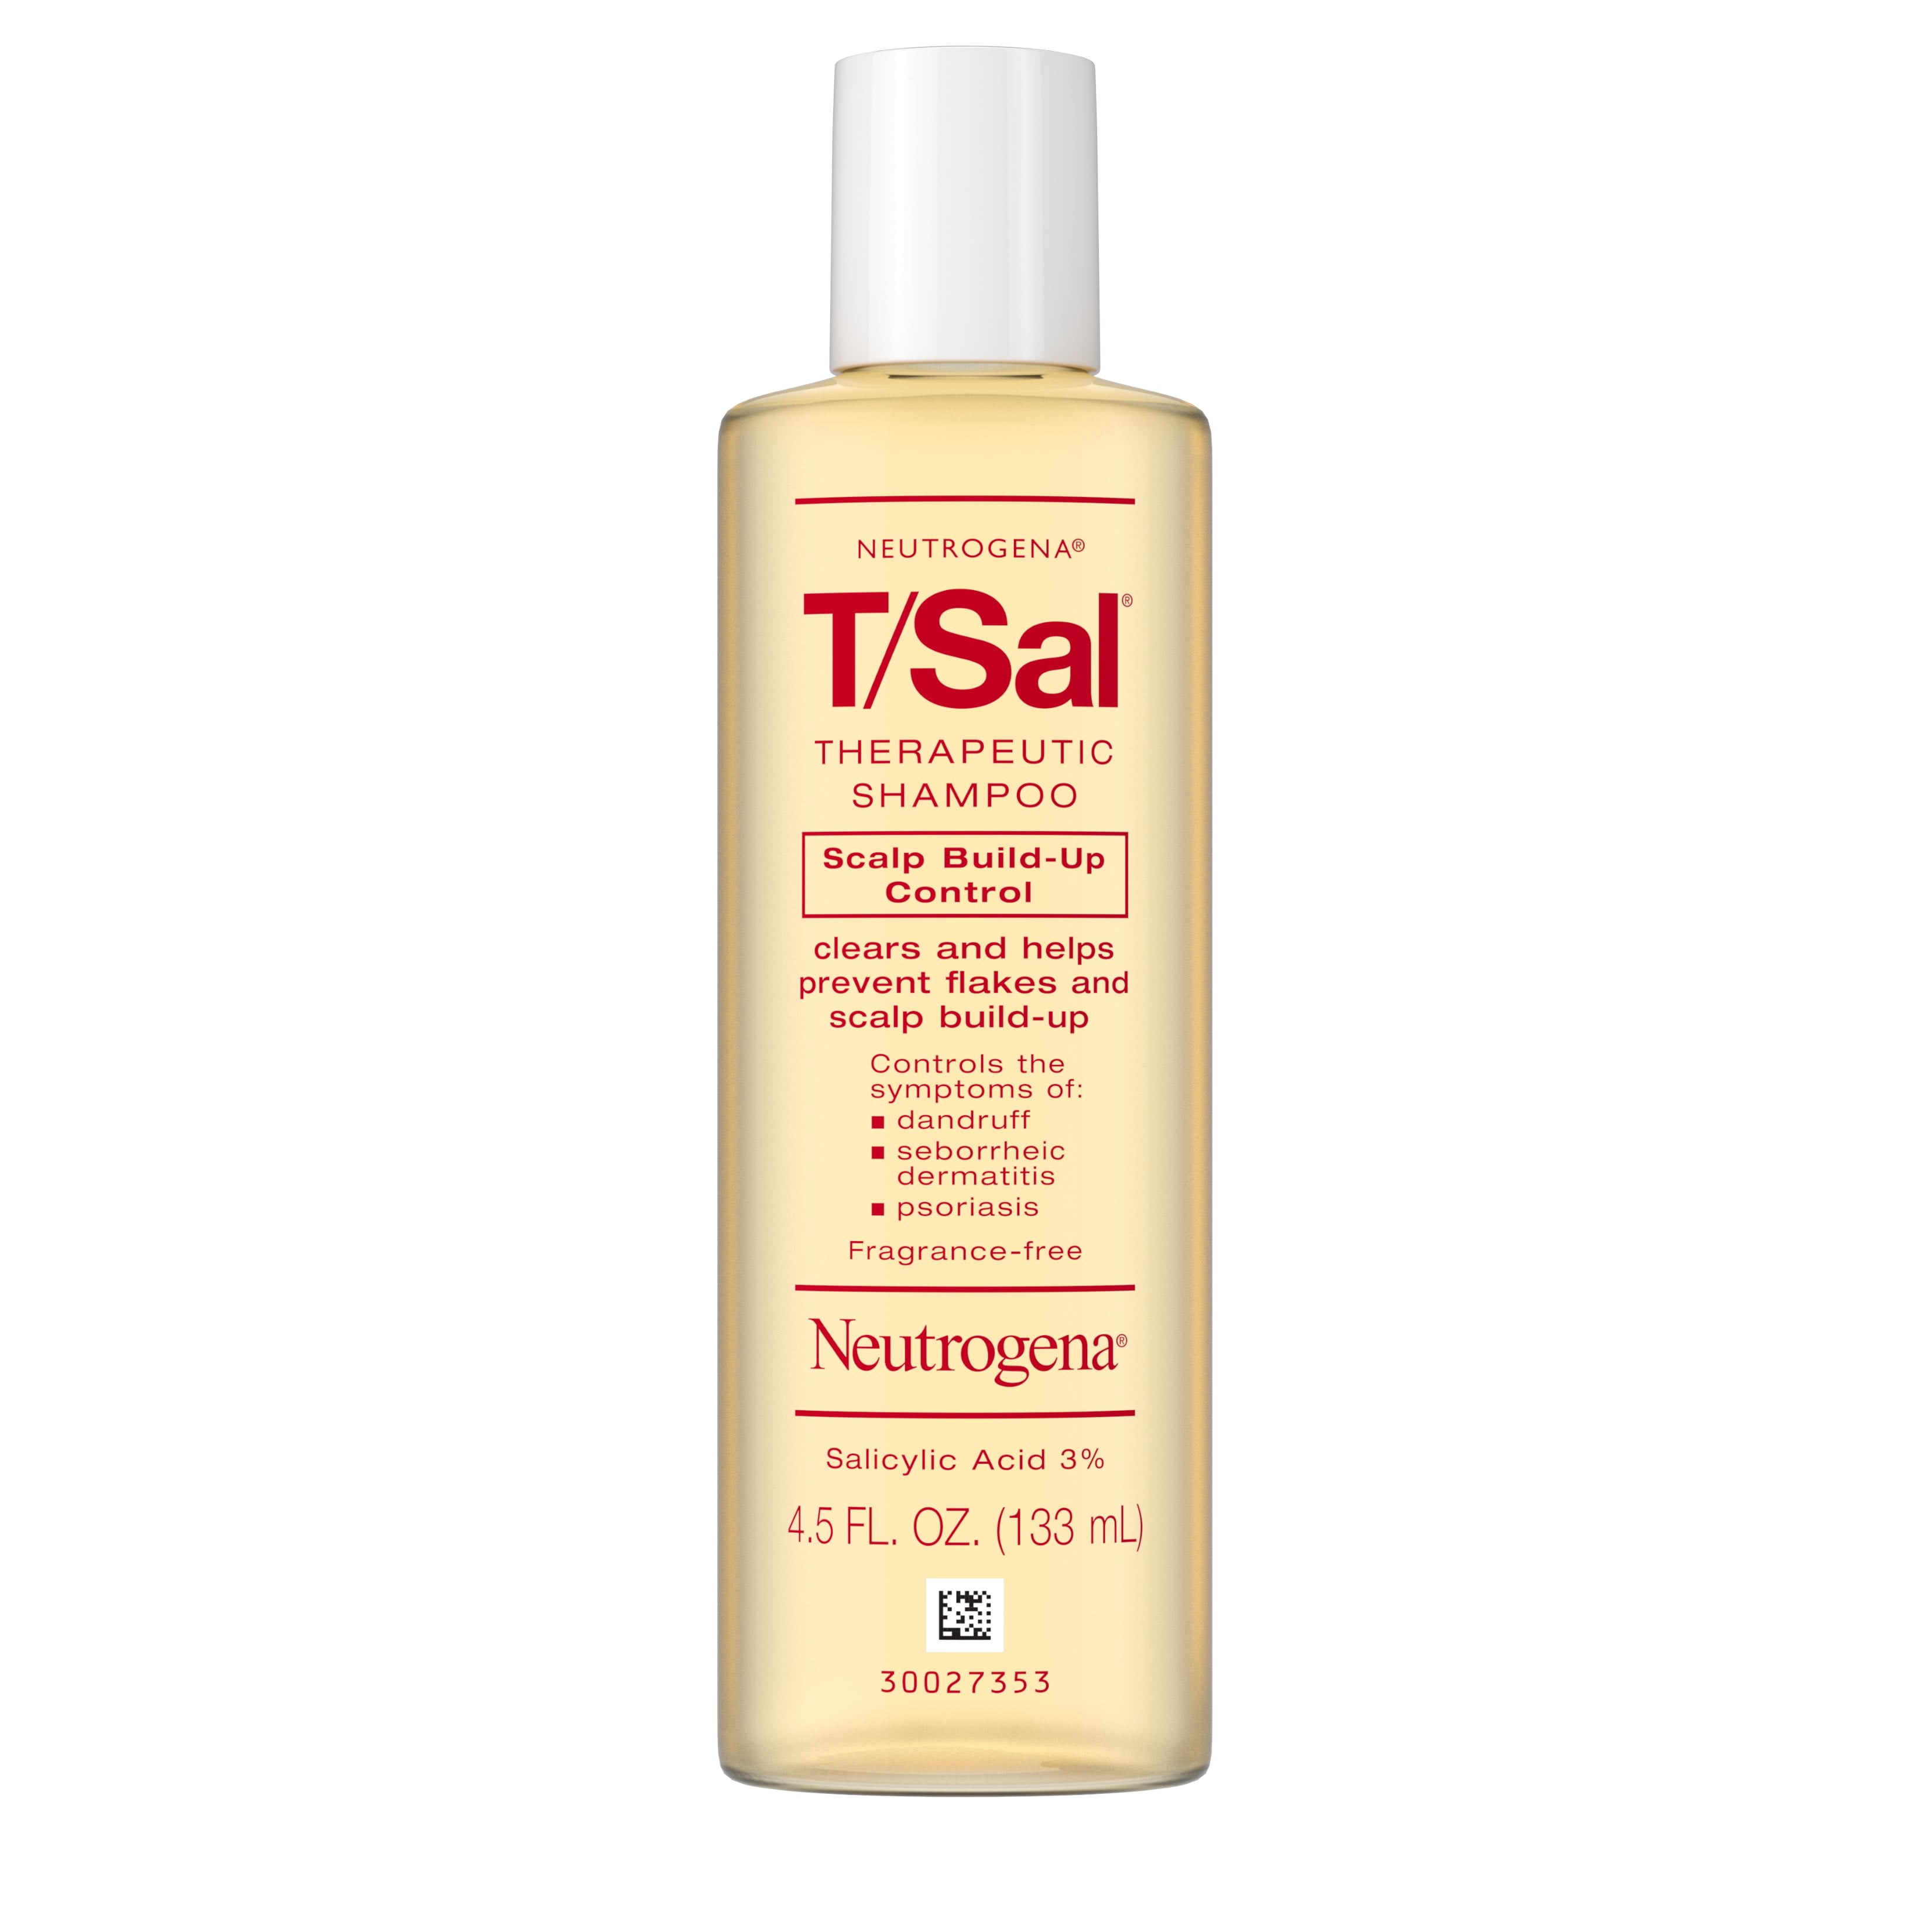 Neutrogena T/Sal Therapeutic Dandruff Relief Daily Shampoo with 3% Salicylic Acid, 4.5 fl oz